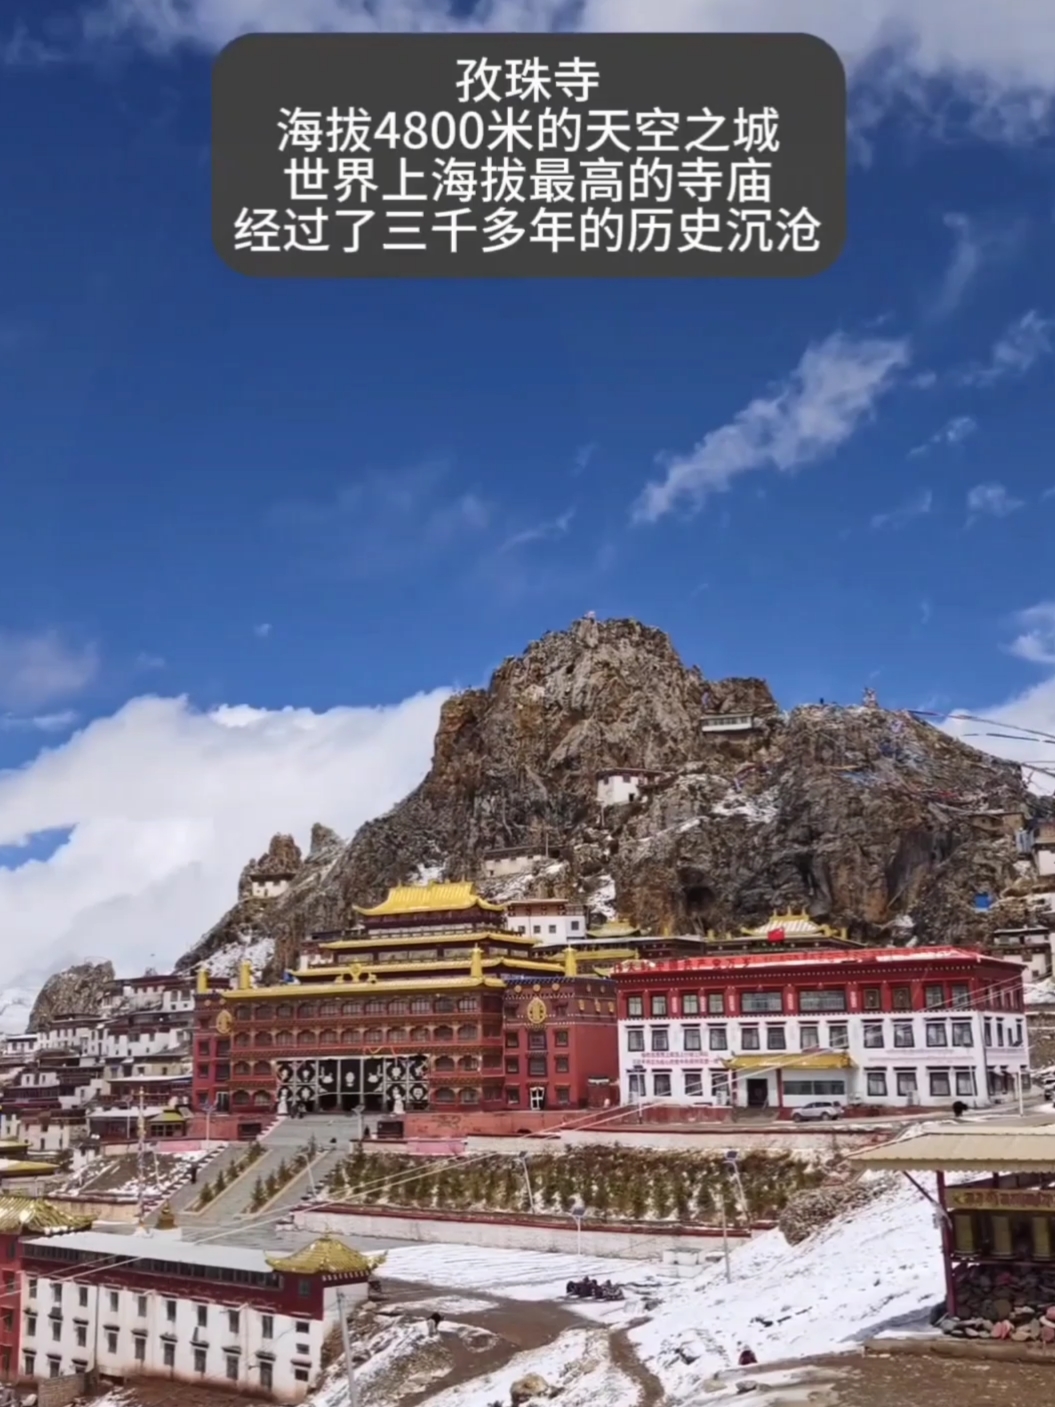 孜珠寺，一个神秘的地方，海拔4800米，是世界上海拔最高的寺庙，经过了三千多年的历史沉淀，这里不收门